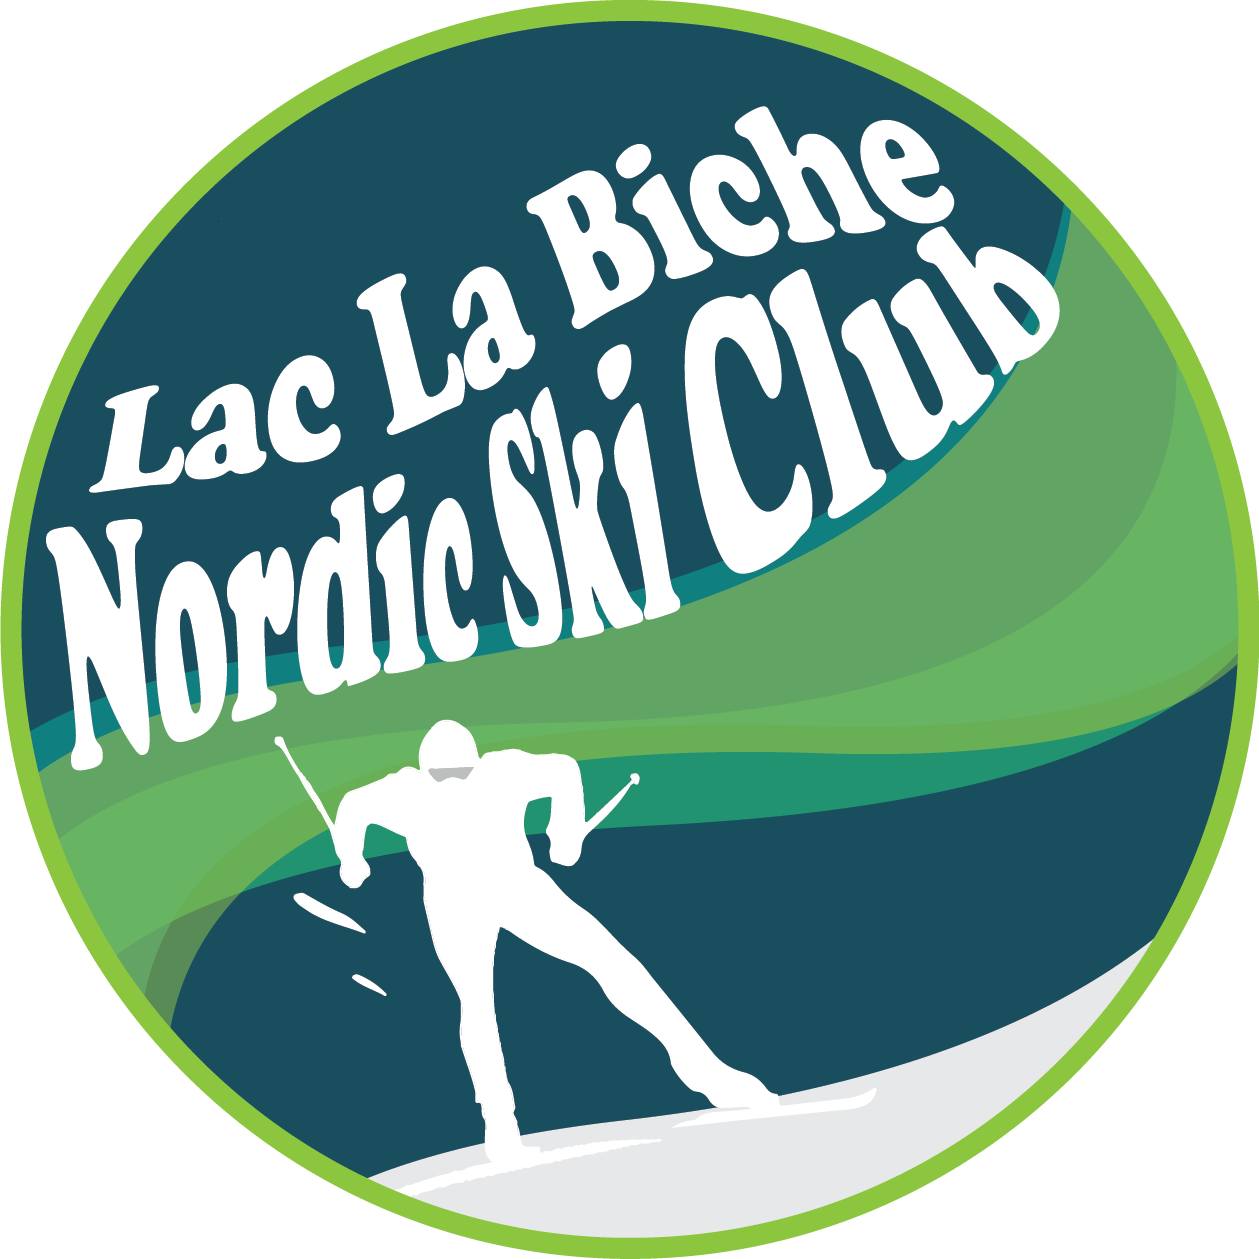 LAC LA BICHE NORDIC SKI CLUB